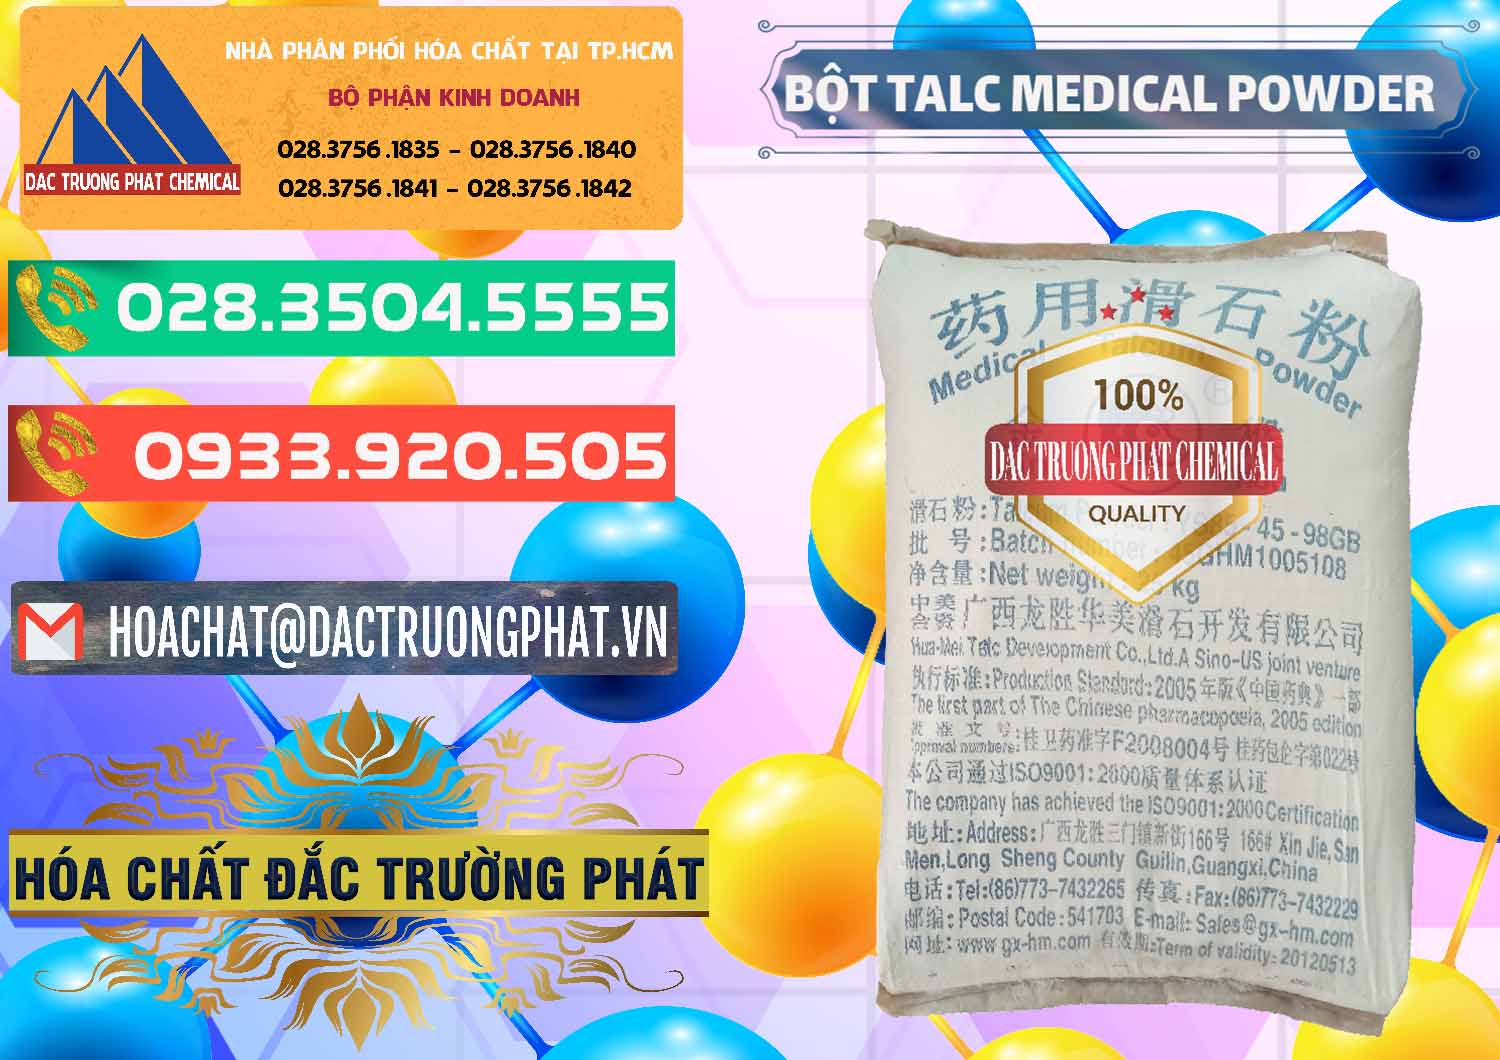 Cty chuyên nhập khẩu & bán Bột Talc Medical Powder Trung Quốc China - 0036 - Nơi chuyên cung cấp ( bán ) hóa chất tại TP.HCM - congtyhoachat.com.vn